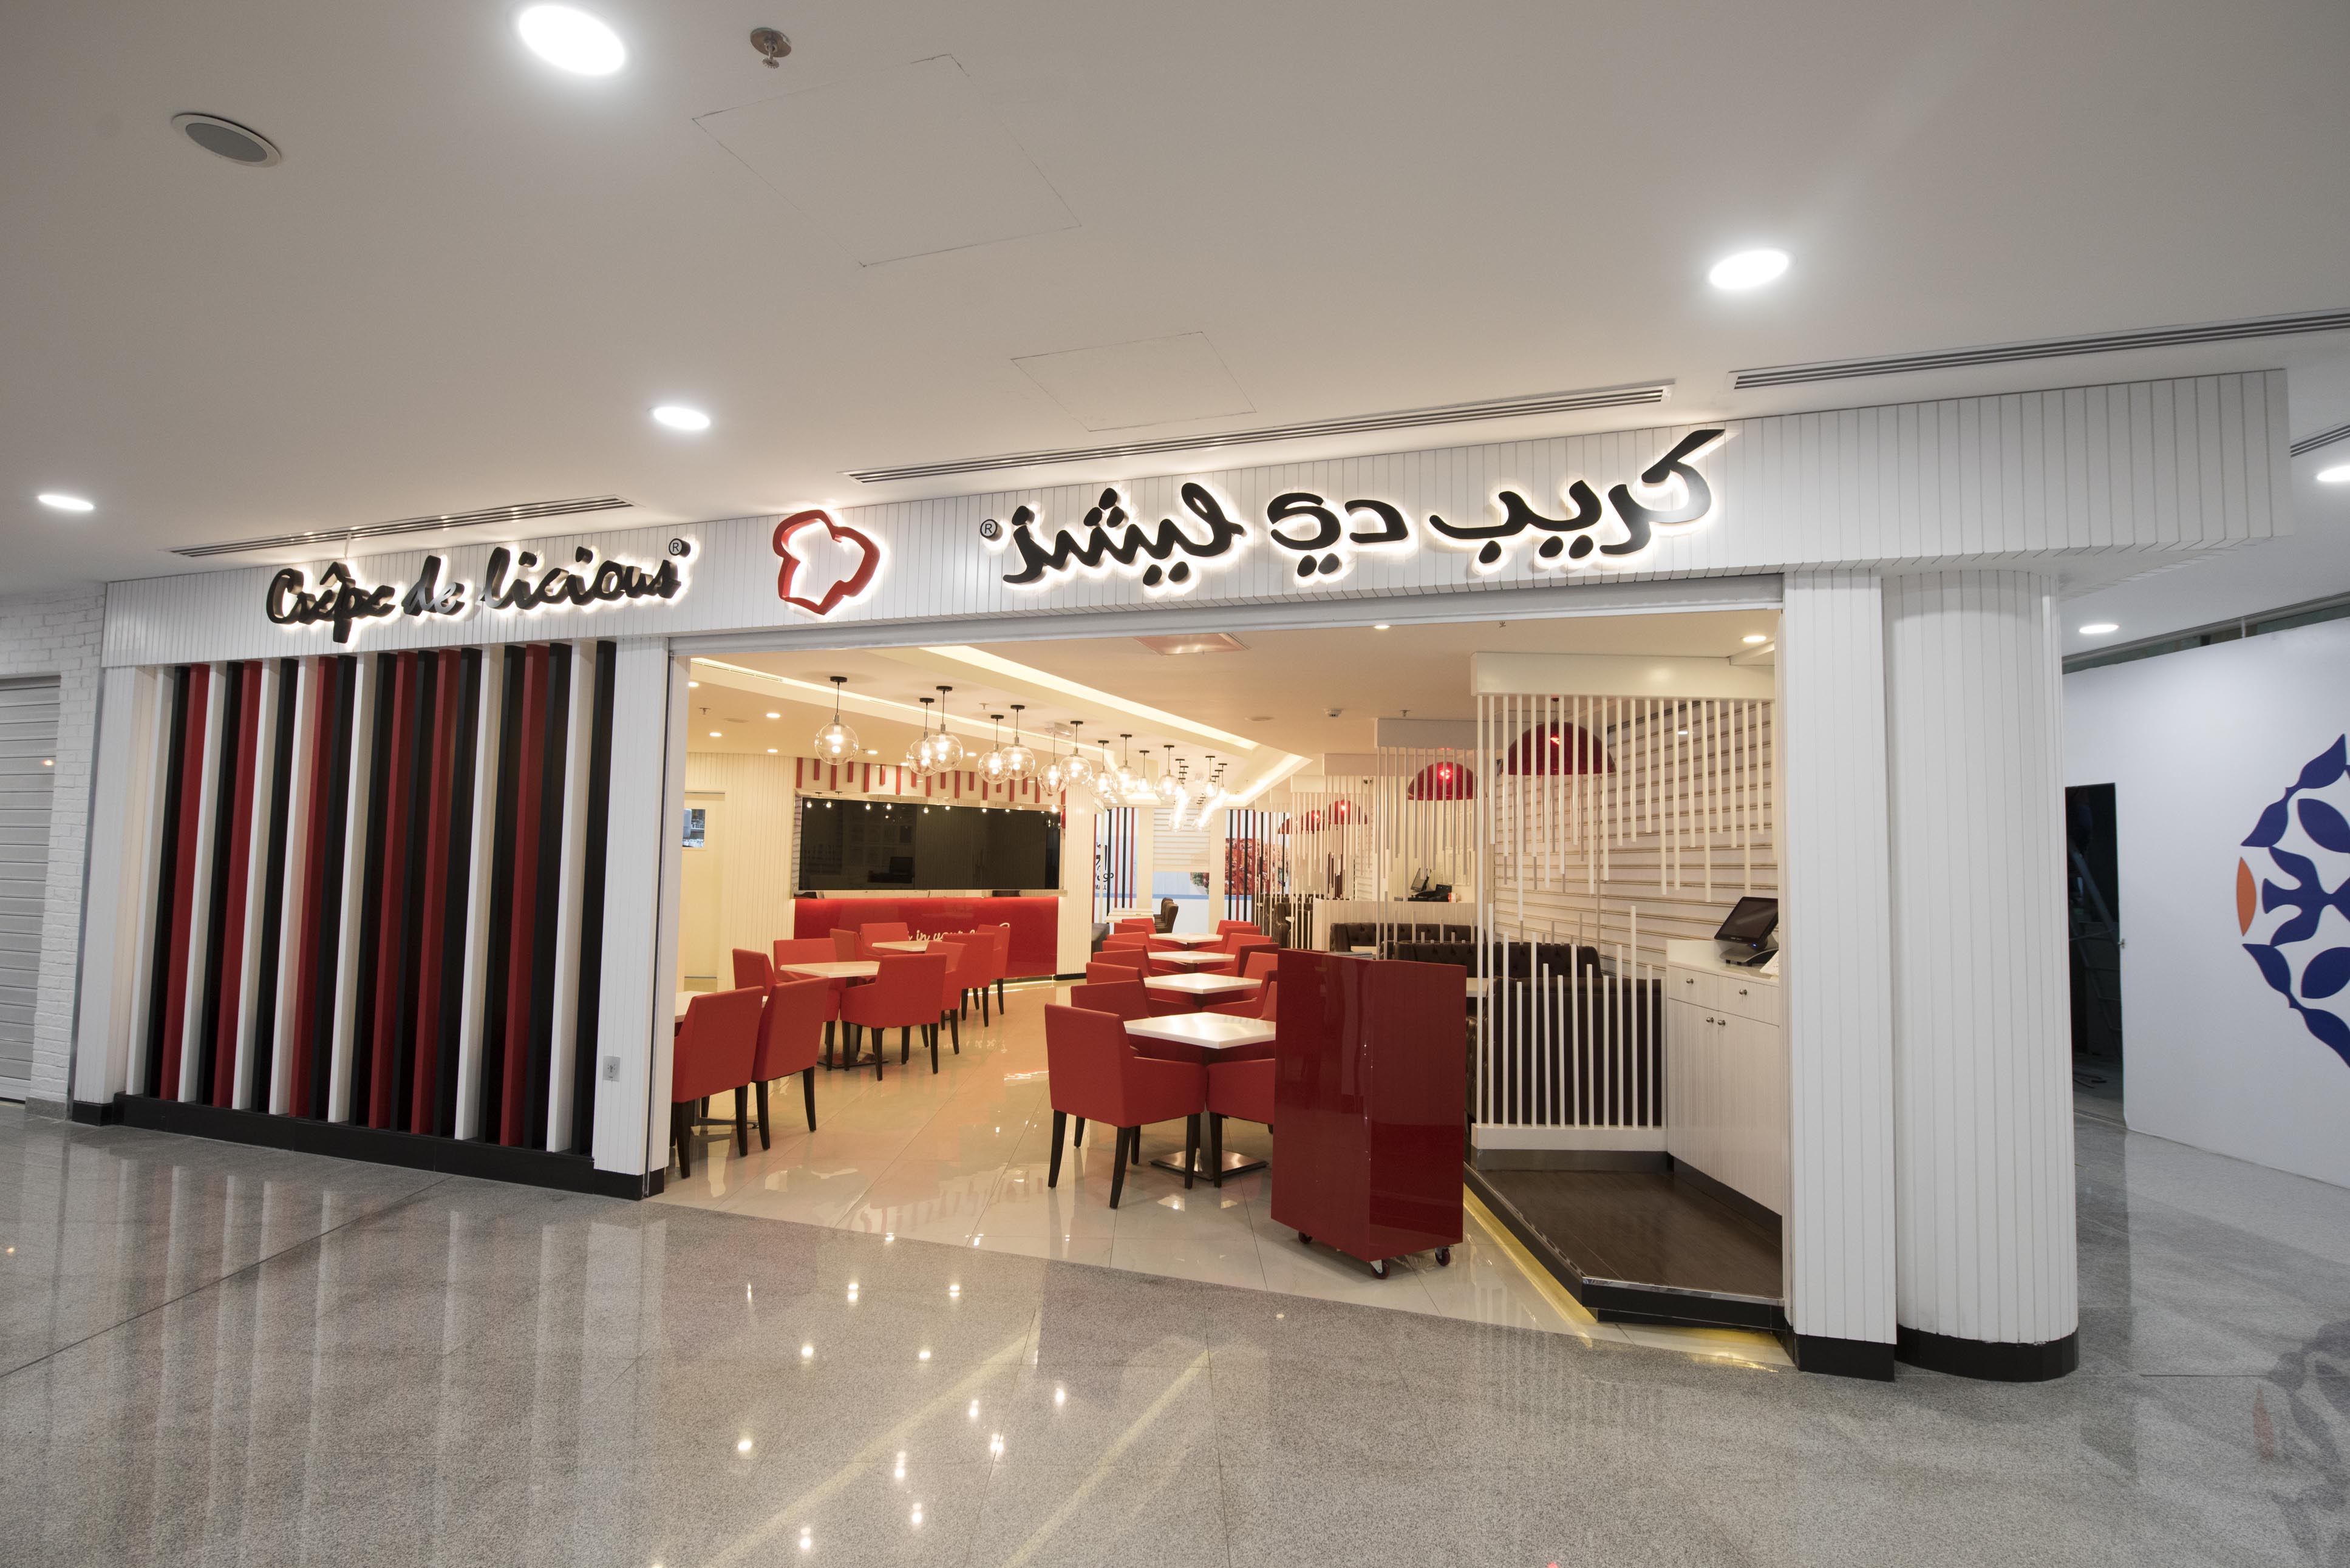 Best Restaurant Interior company kuwait